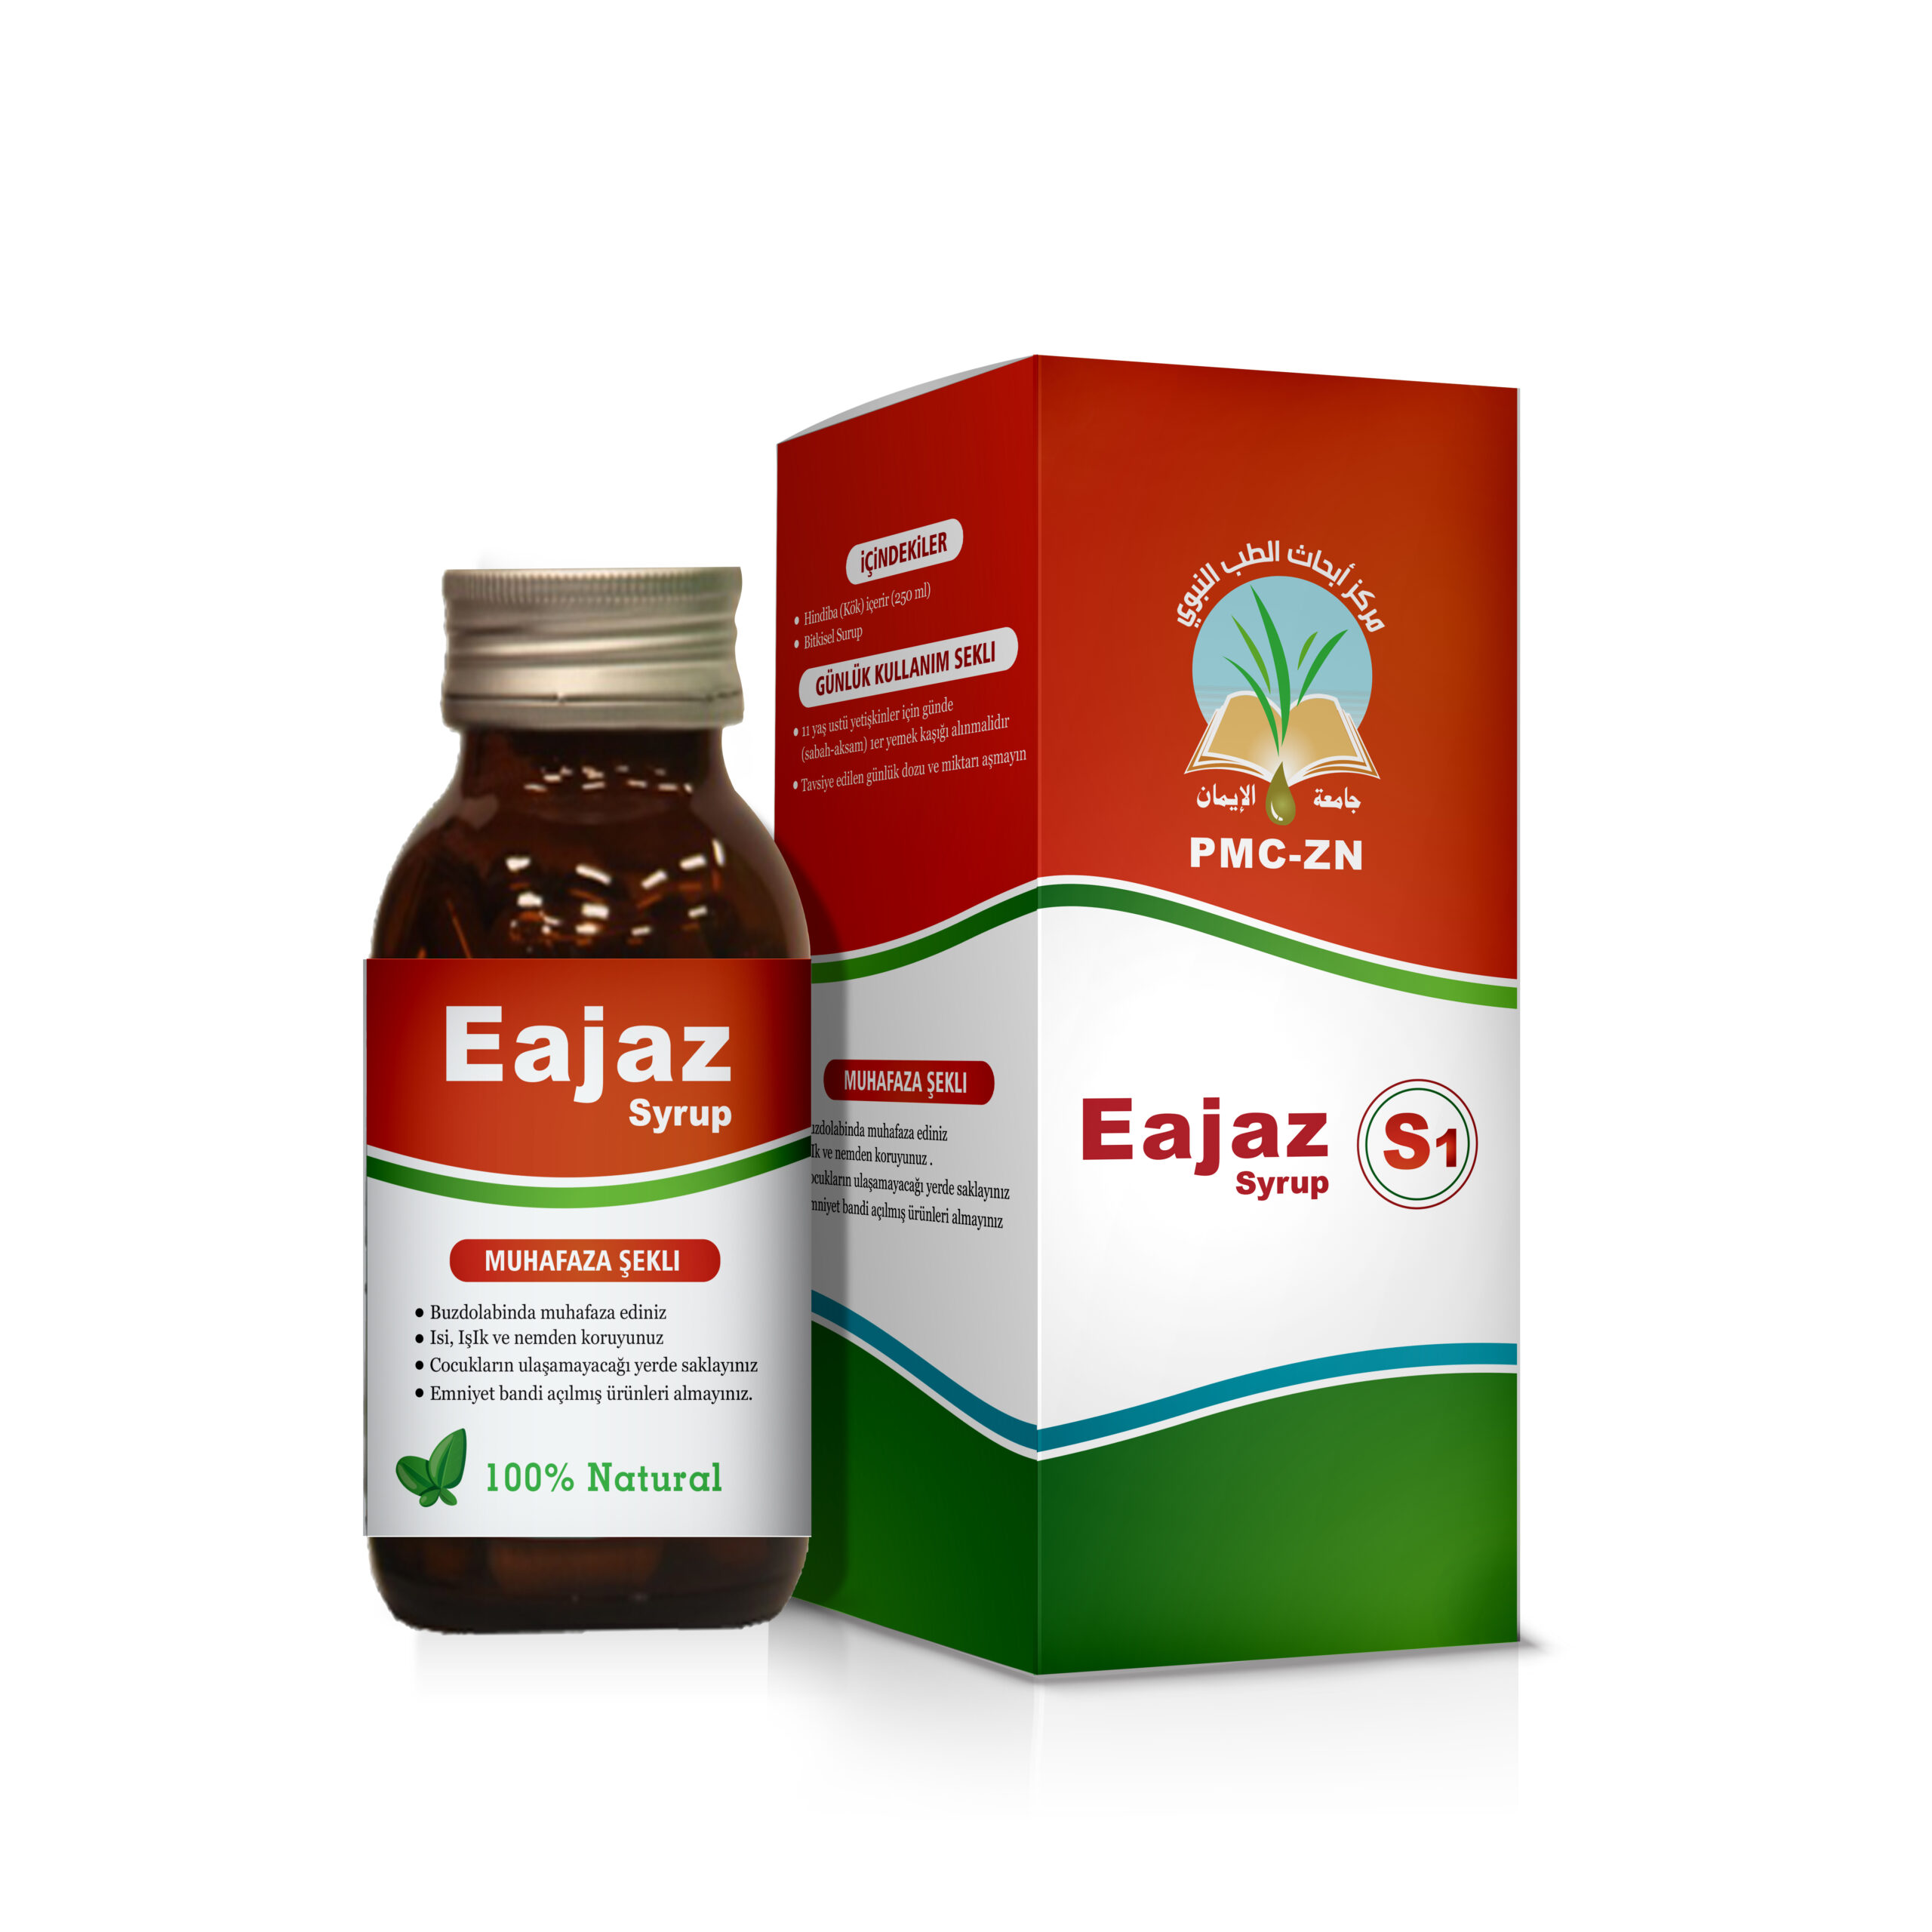 EAJAZ S1
يساعد على خفض نسبة السكر التراكمي في الدم.
علاج للسرطان.
رافع للمناعة.
علاج للأمراض المناعية.
علاج للقلب و الشرايين.
علاج للعقم و الضعف الجنسي.
علاج للفيروسات.